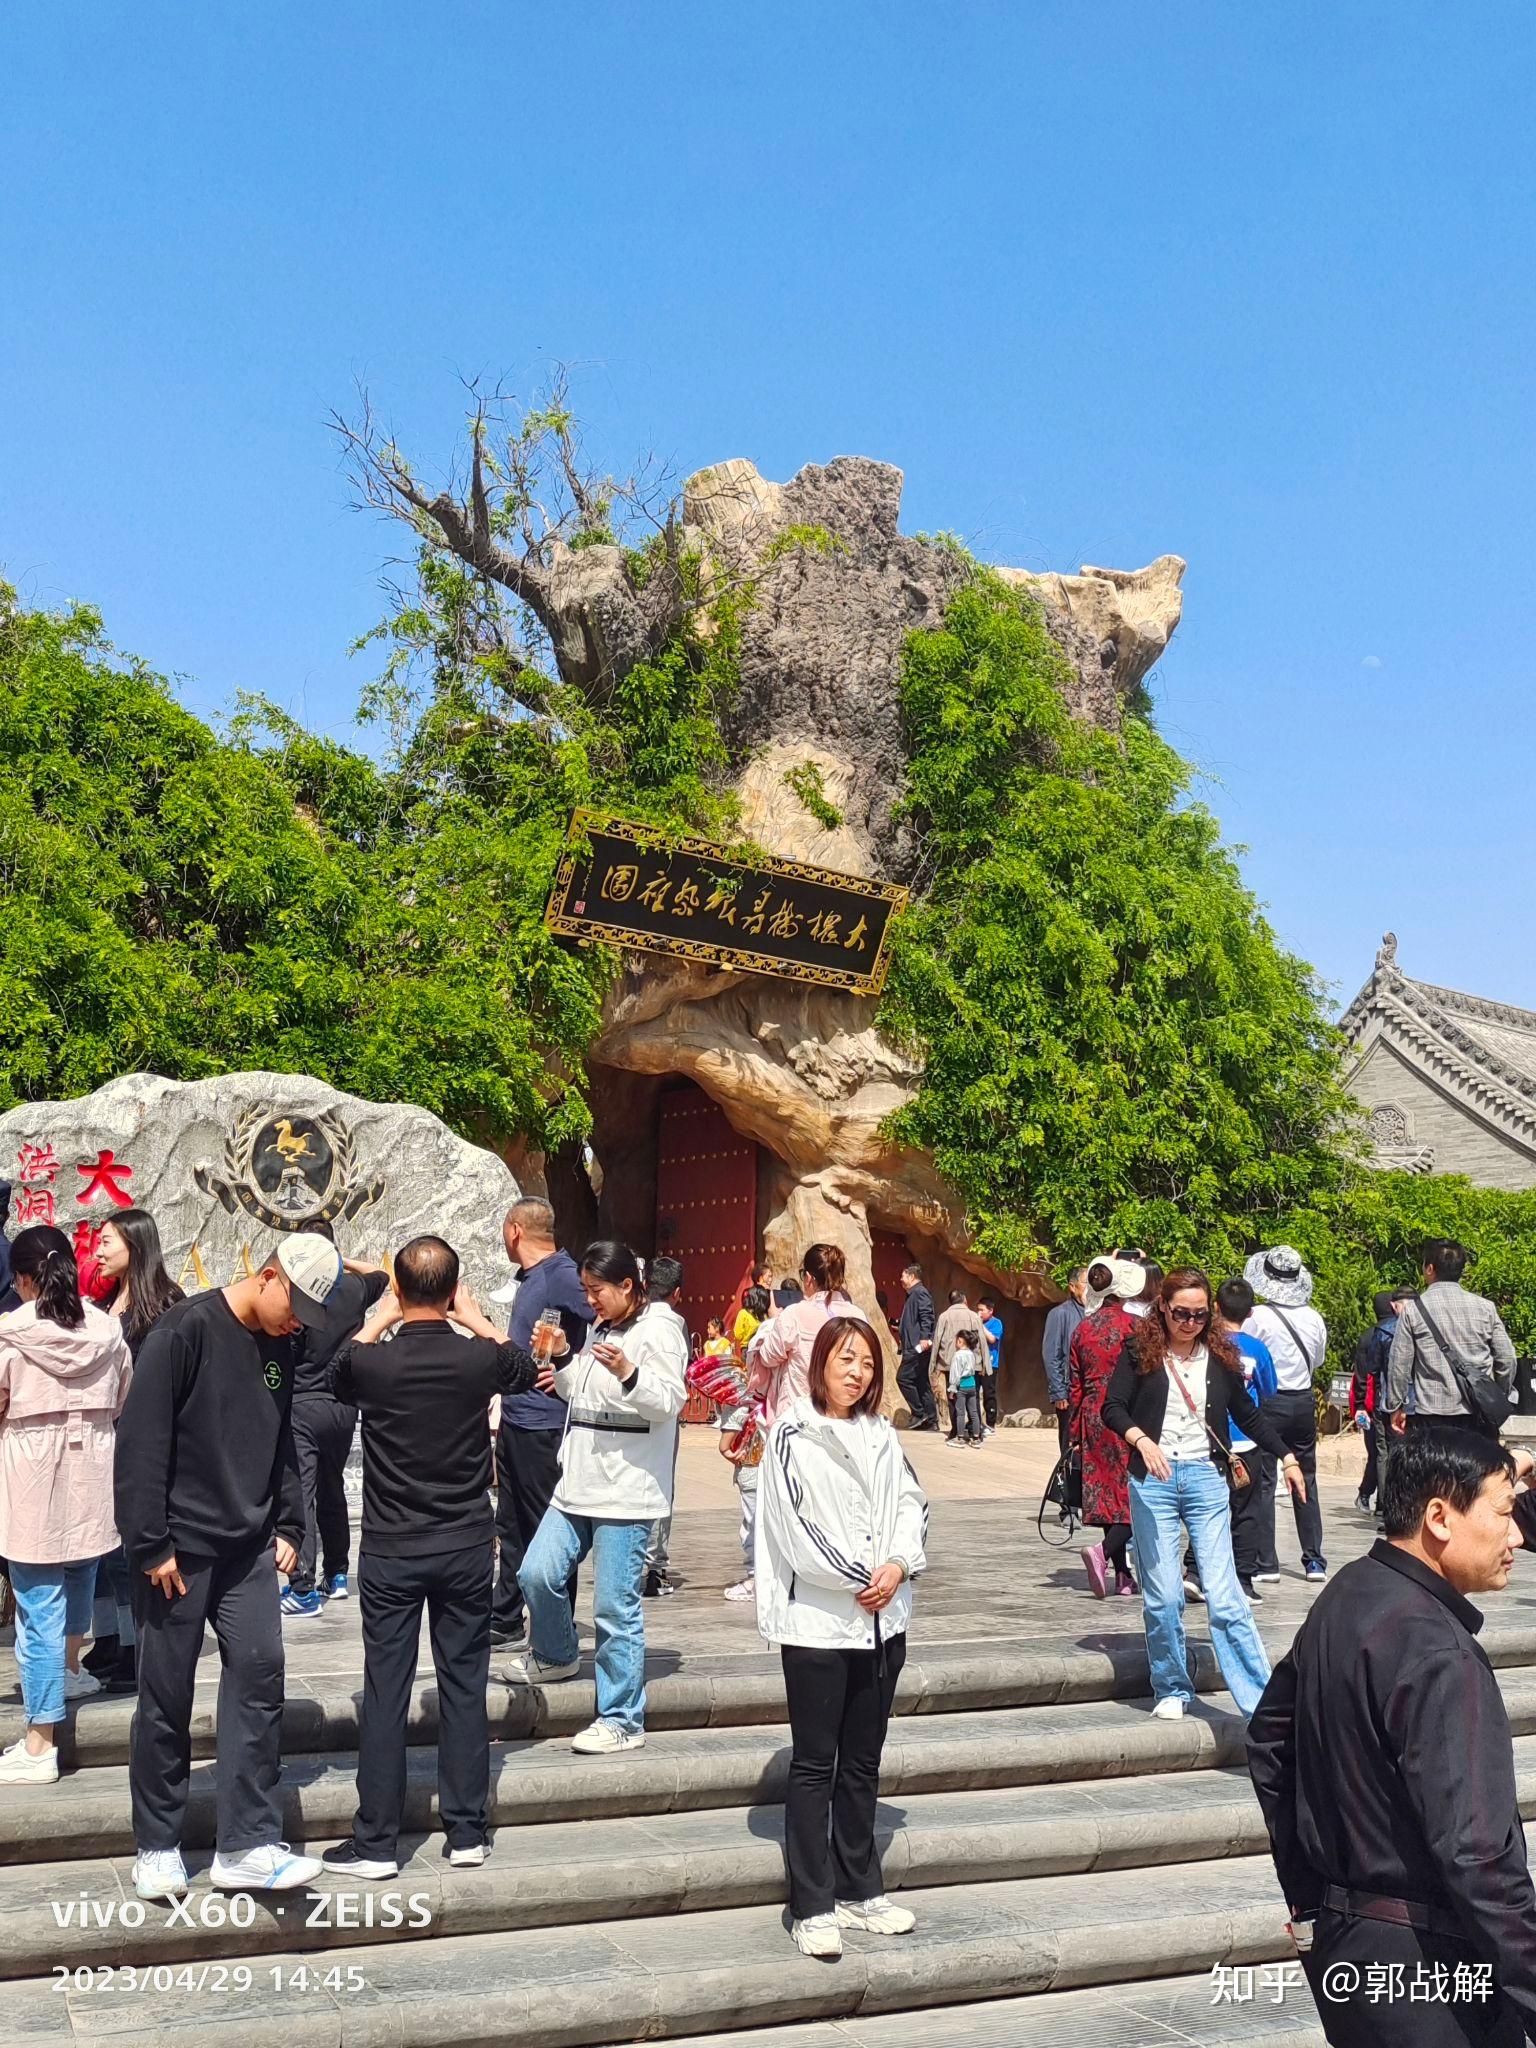 大槐树中国年 旅游的新选择